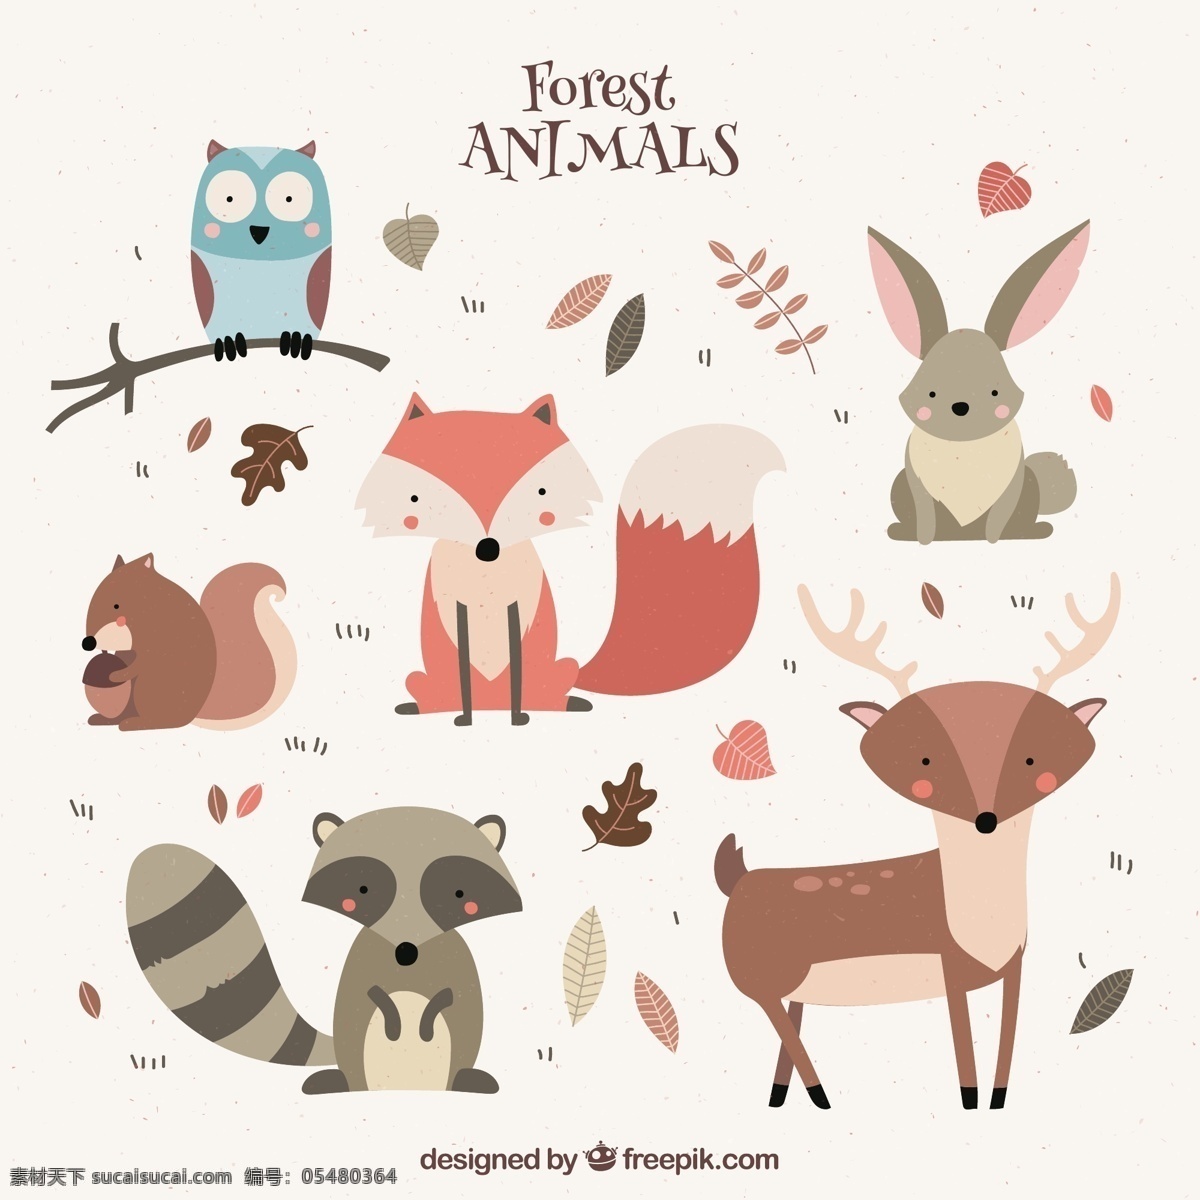 款 彩绘 森林 动物 矢量图 卡通 可爱 彩色 猫头鹰 兔子 狐狸 麋鹿